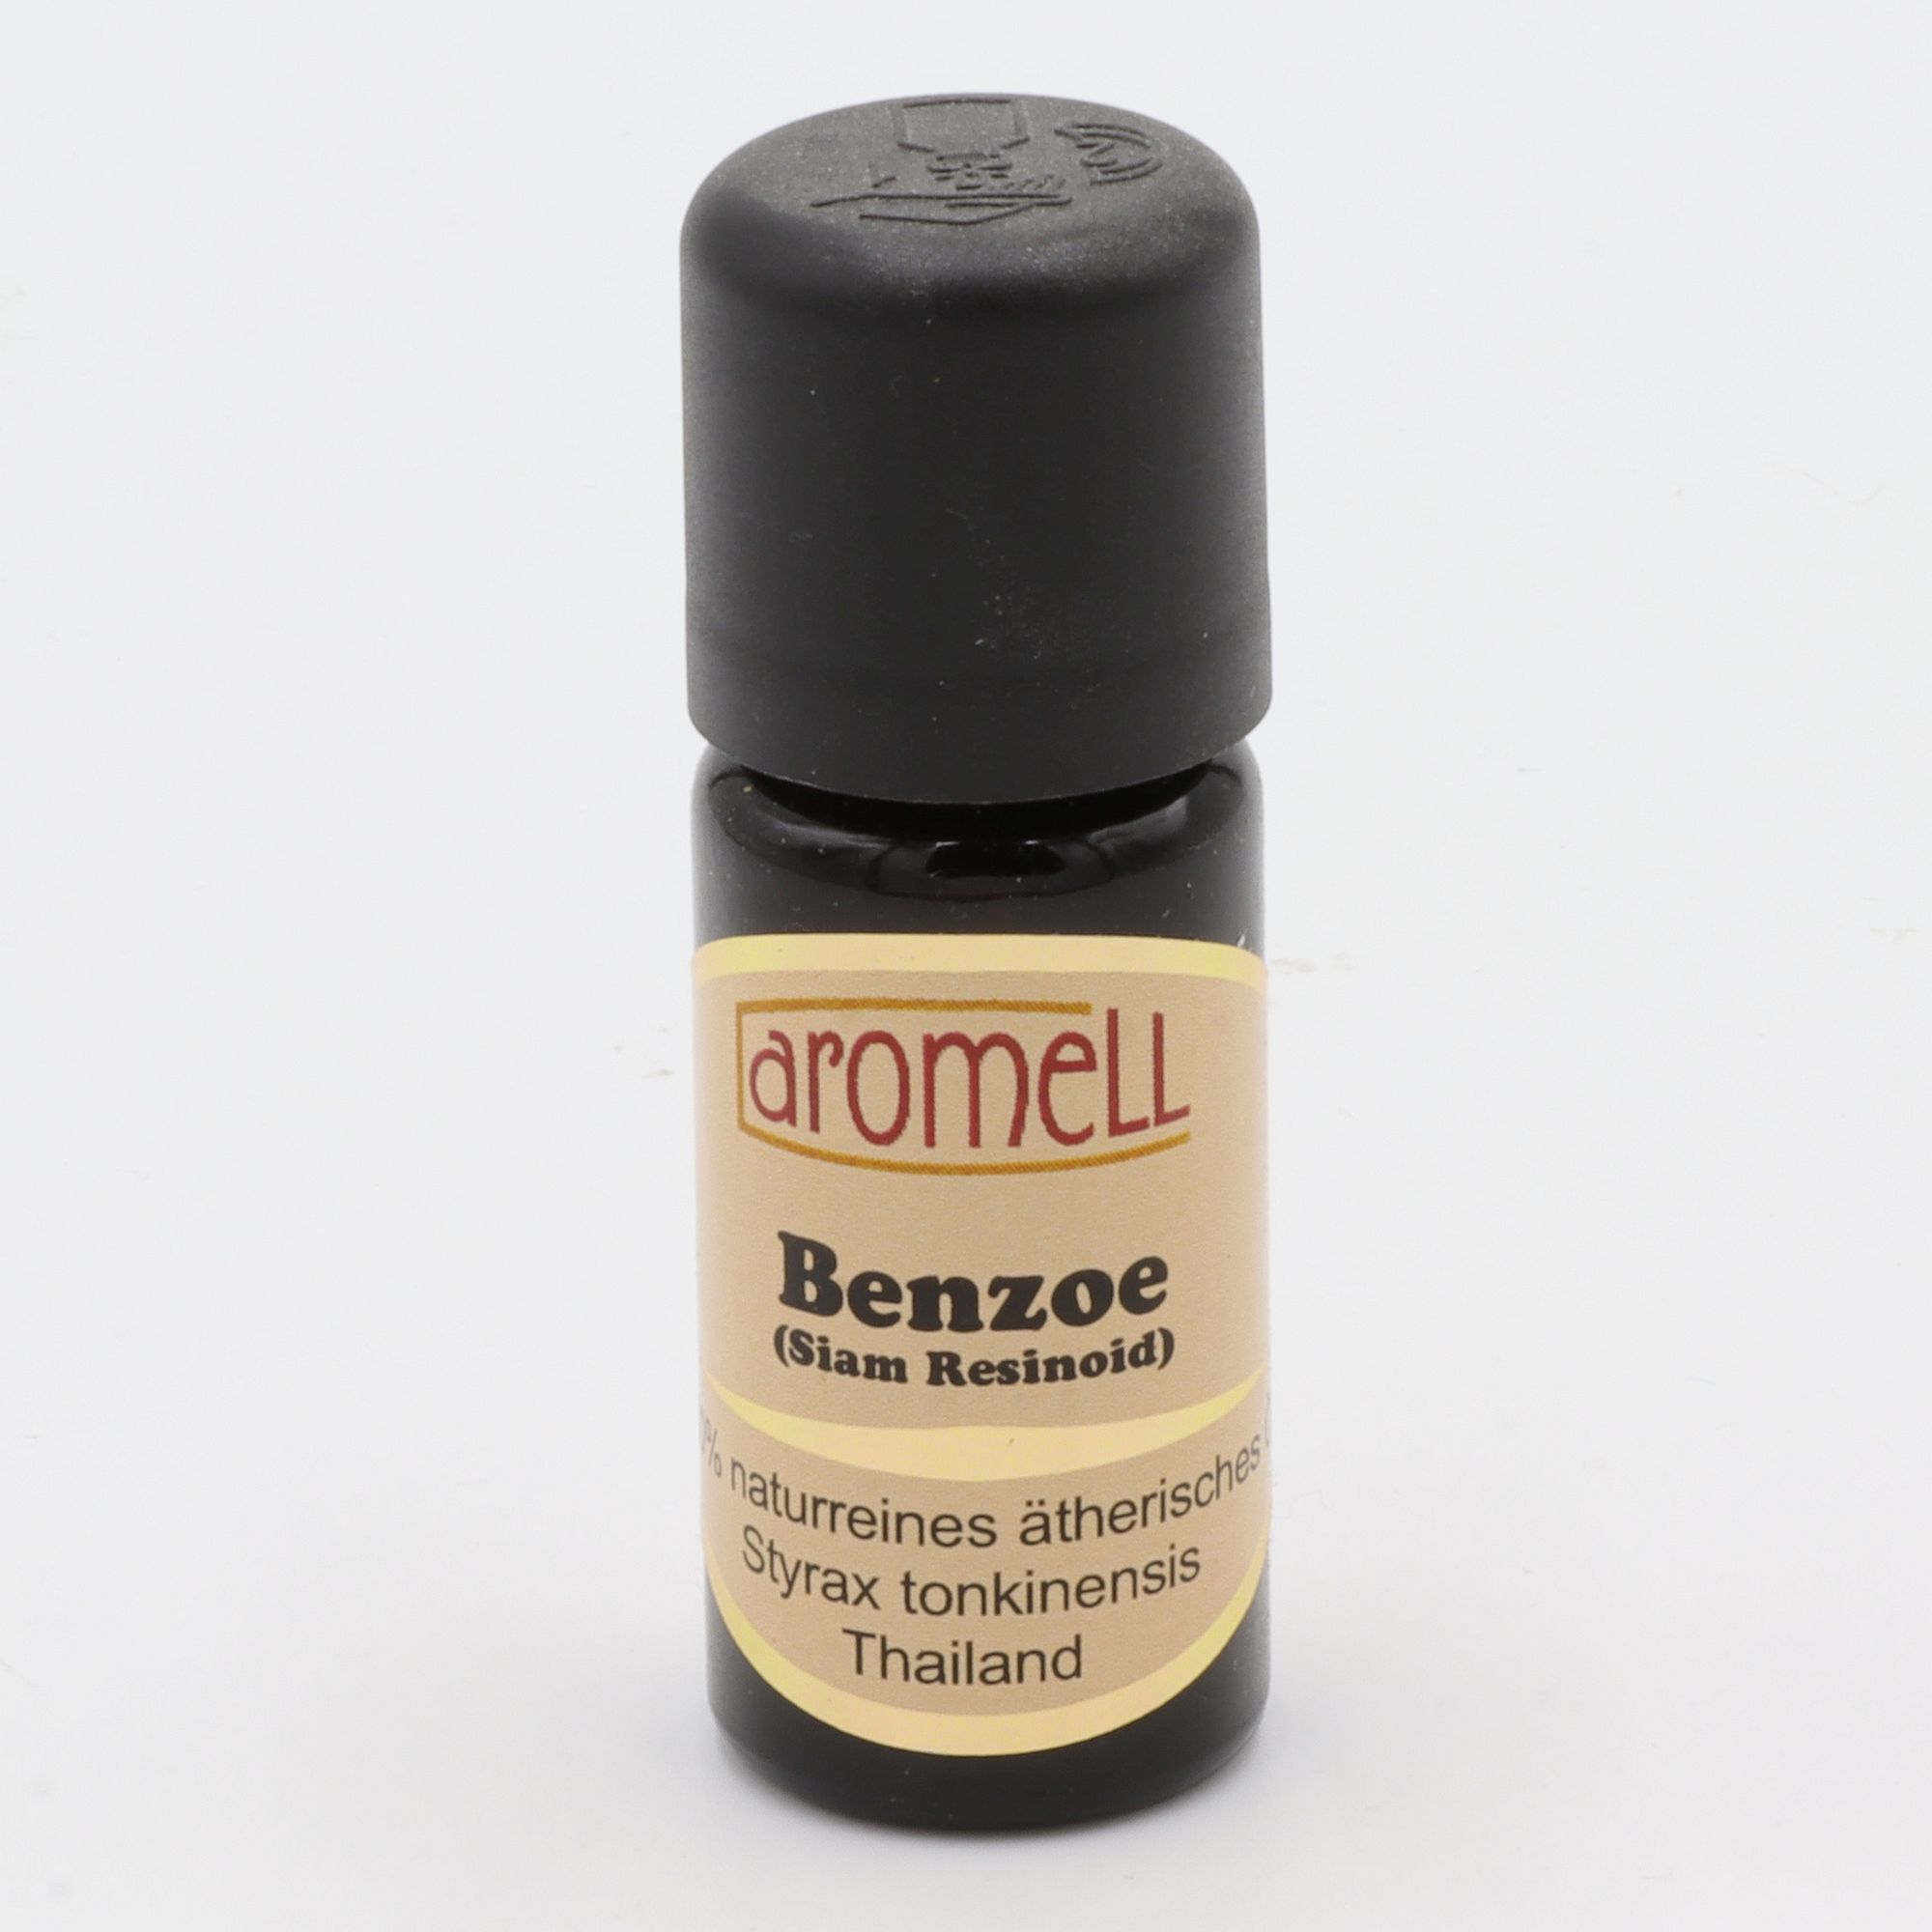 Ätherisches Öl - Aromell - Benzoe (Siam Resinoid) - 100% naturrein - Styrax Tonkinensis aus Thailand - aromatischer Raumduft für Dein Wohlbefinden - Glas mit Tropfendosierung